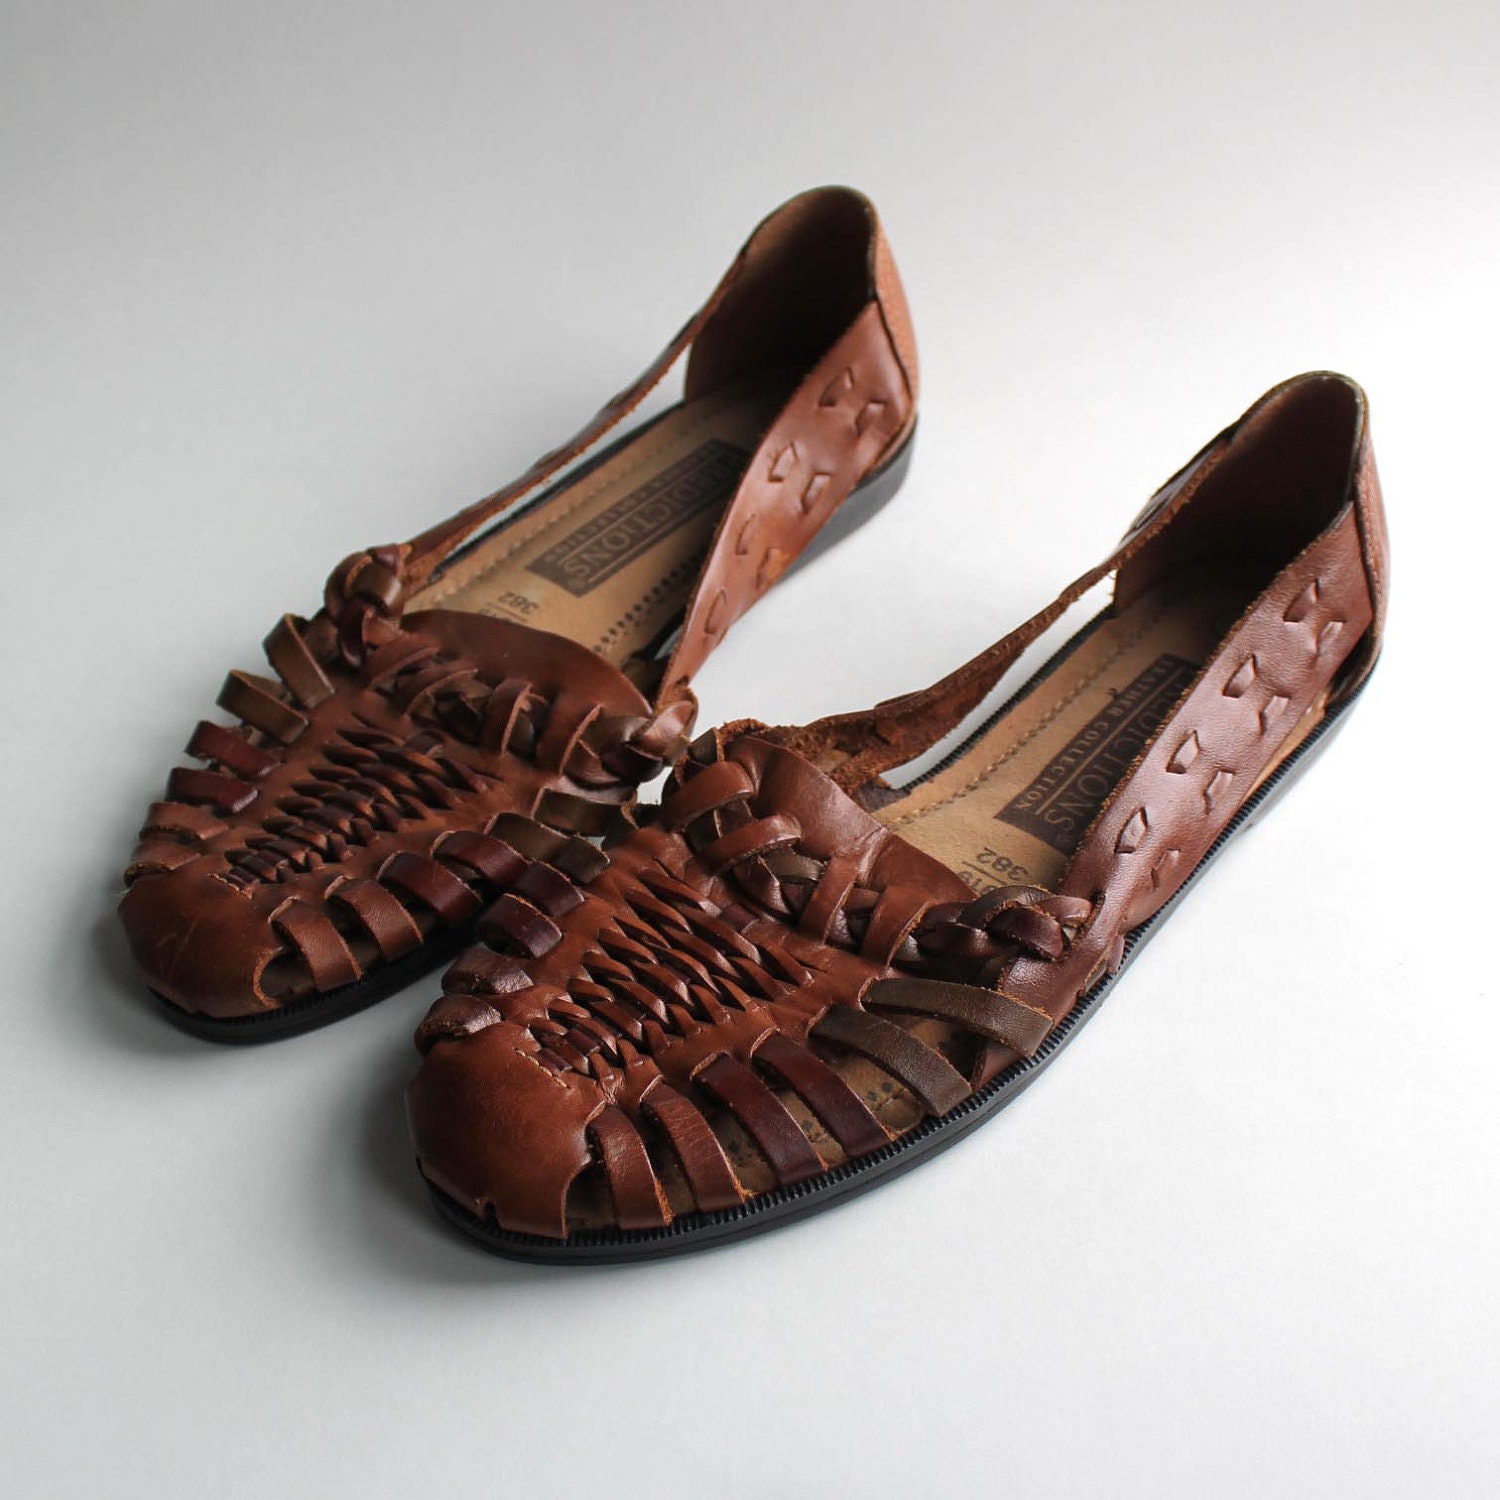 Huarache Shoes Sandals